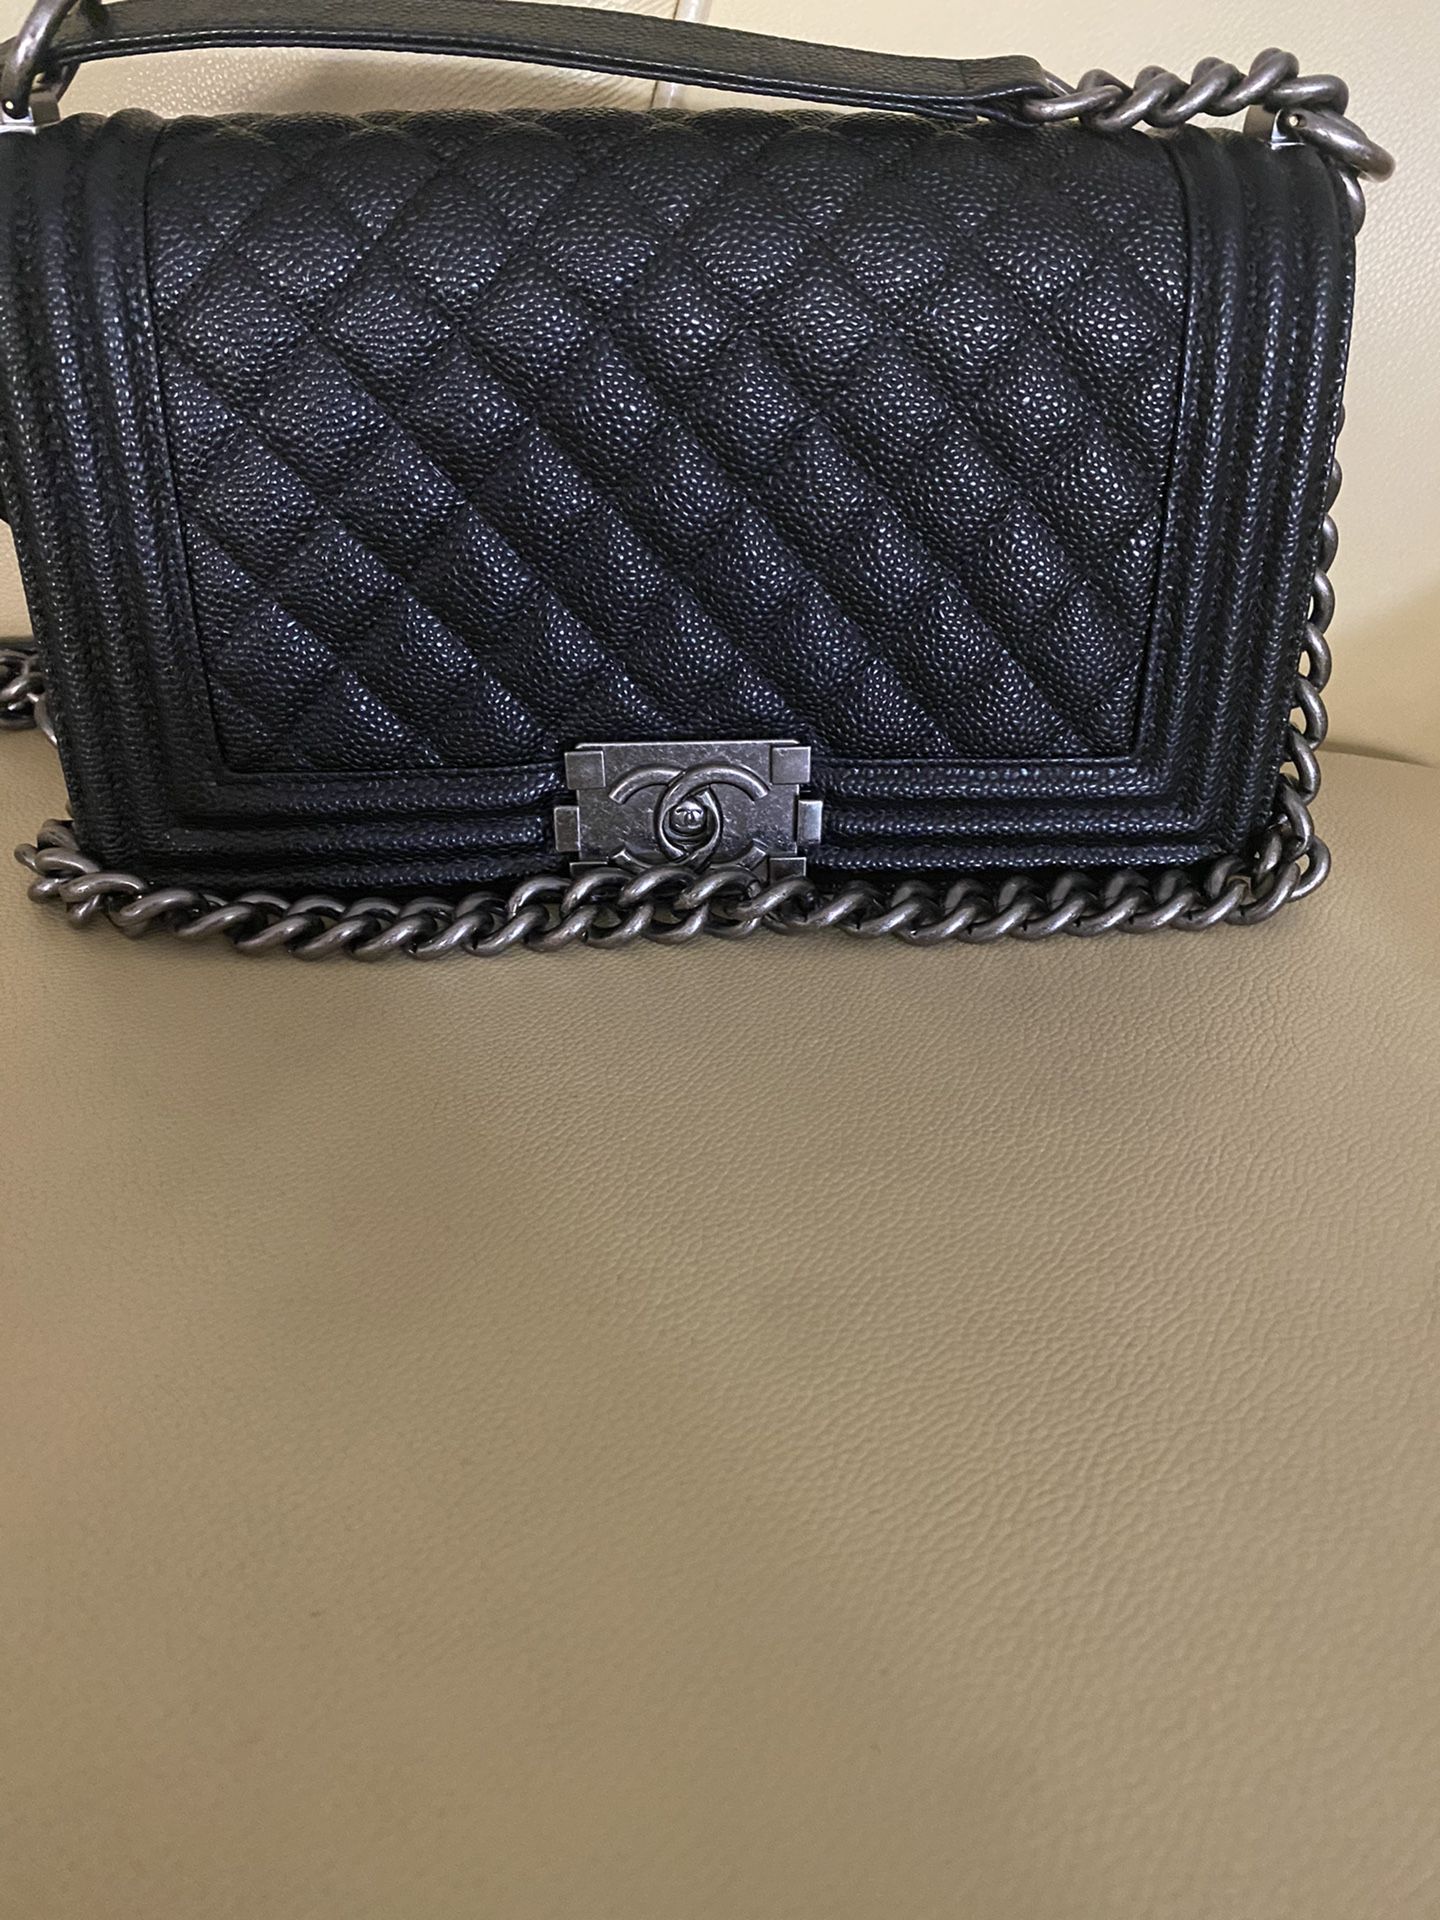 Chanel caviar boy bag!